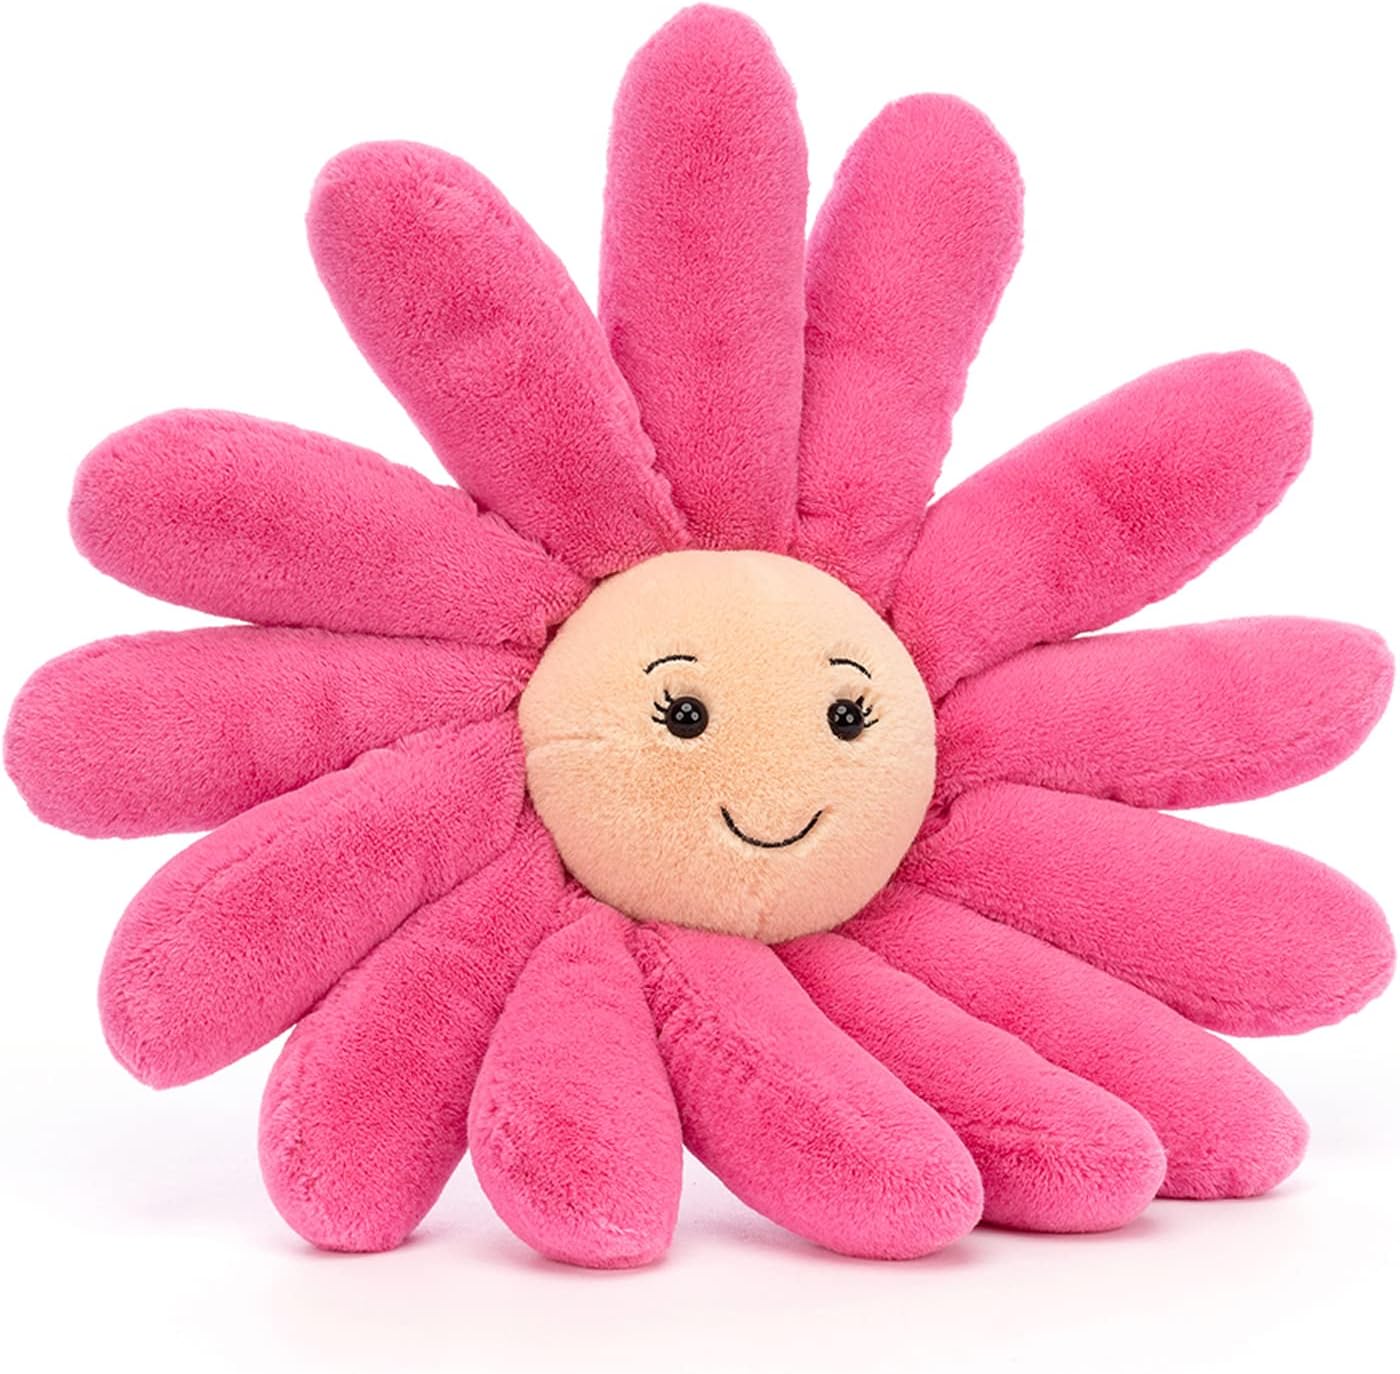 Fleury Gerbera Stuffed Toy by Jellycat - Large